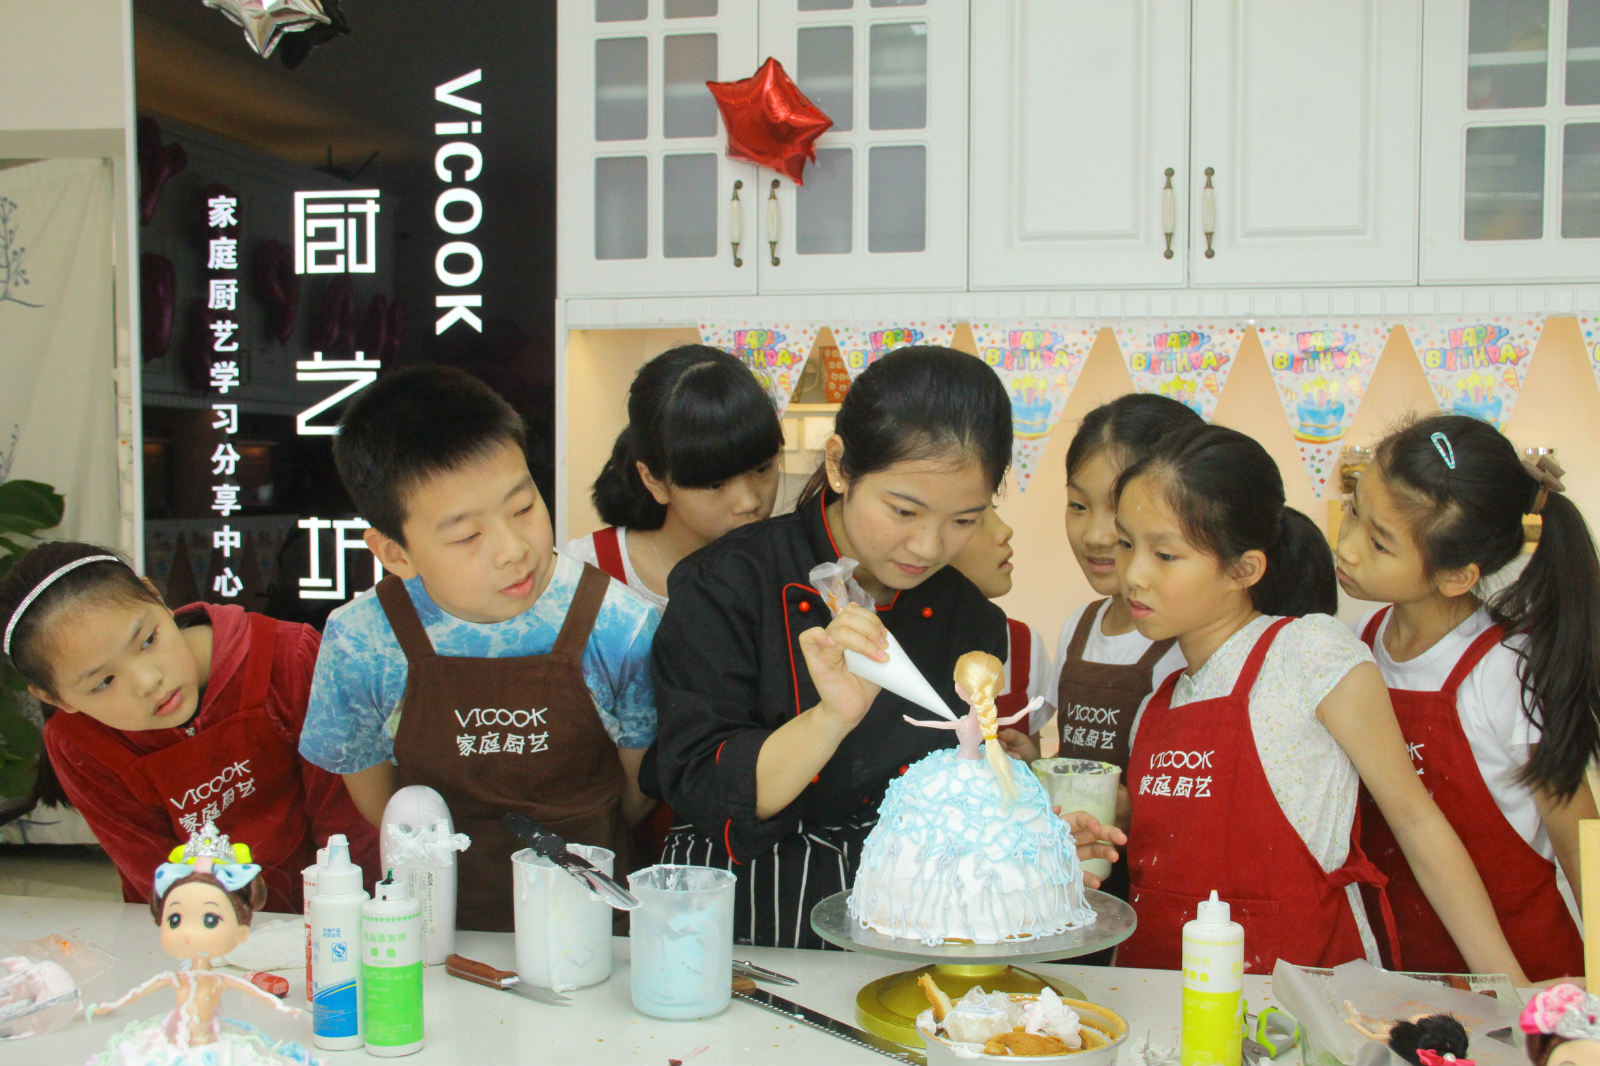 定制主题生日趴 就在ViCOOK家庭厨艺培训中